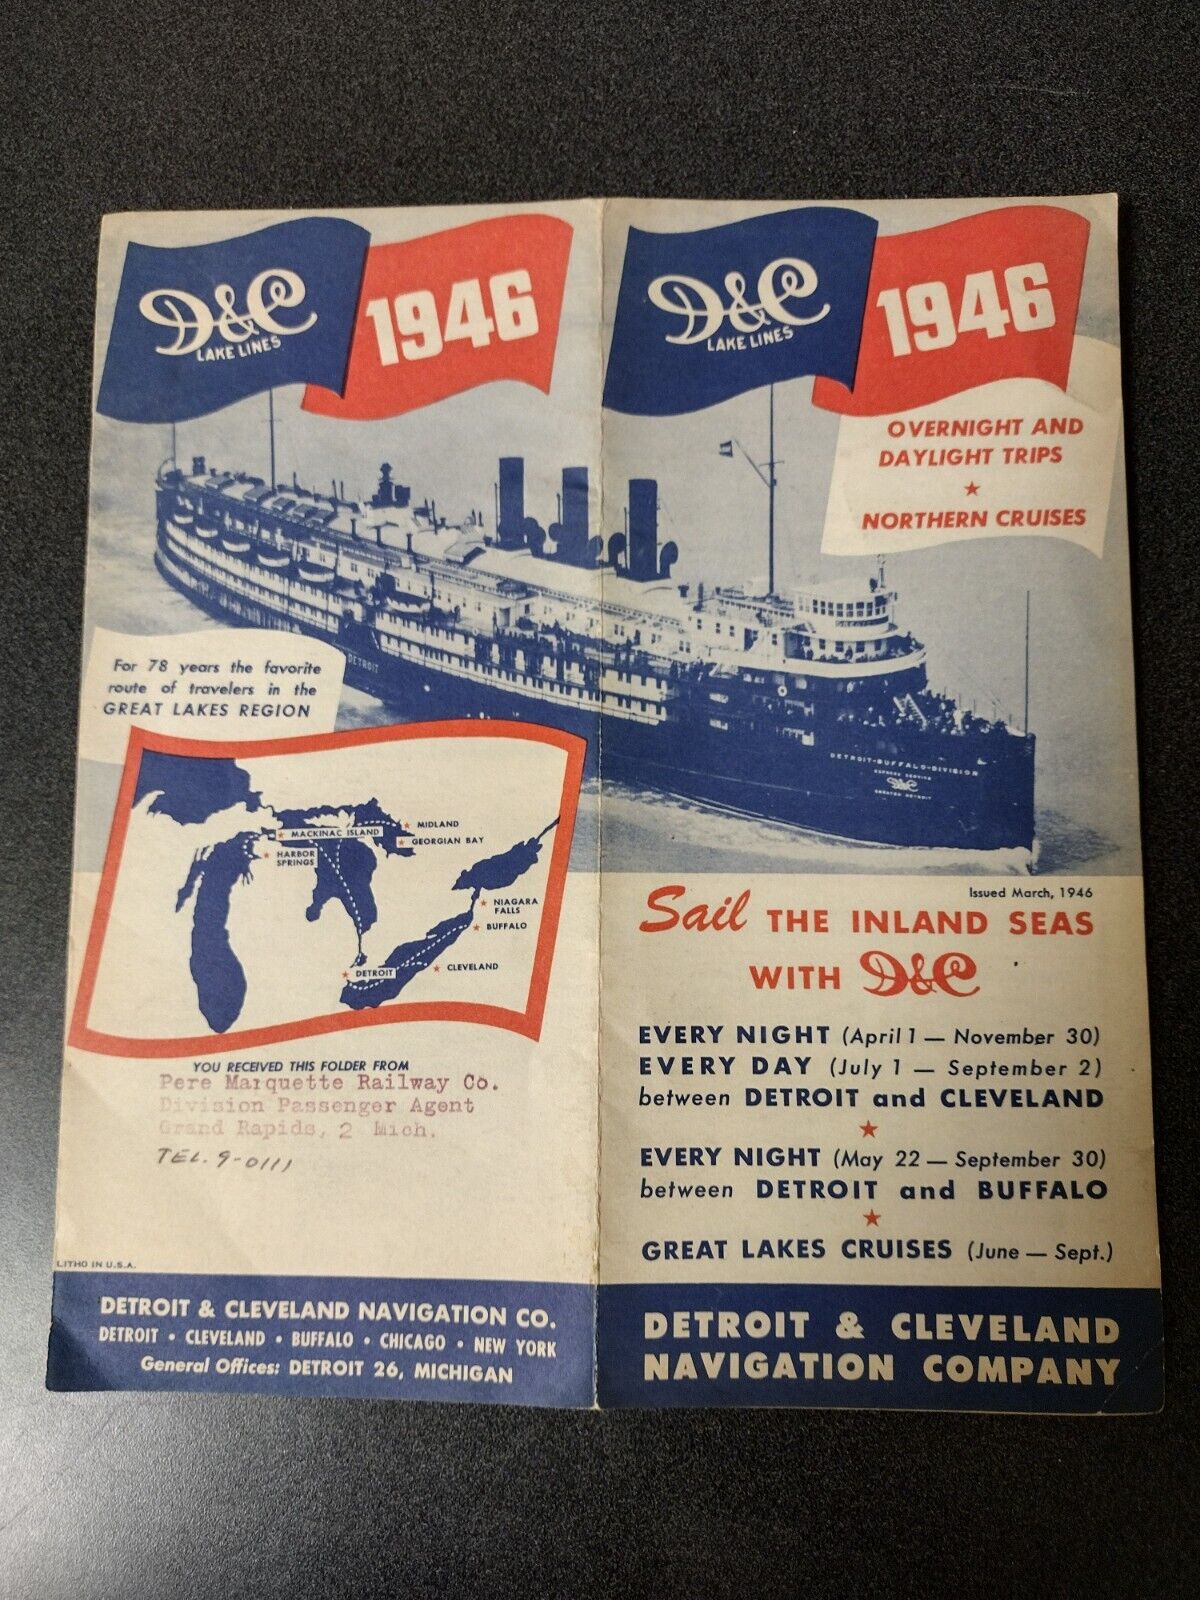 D&C Lake Lines (Detroit & Cleveland Navigation Company) 1946